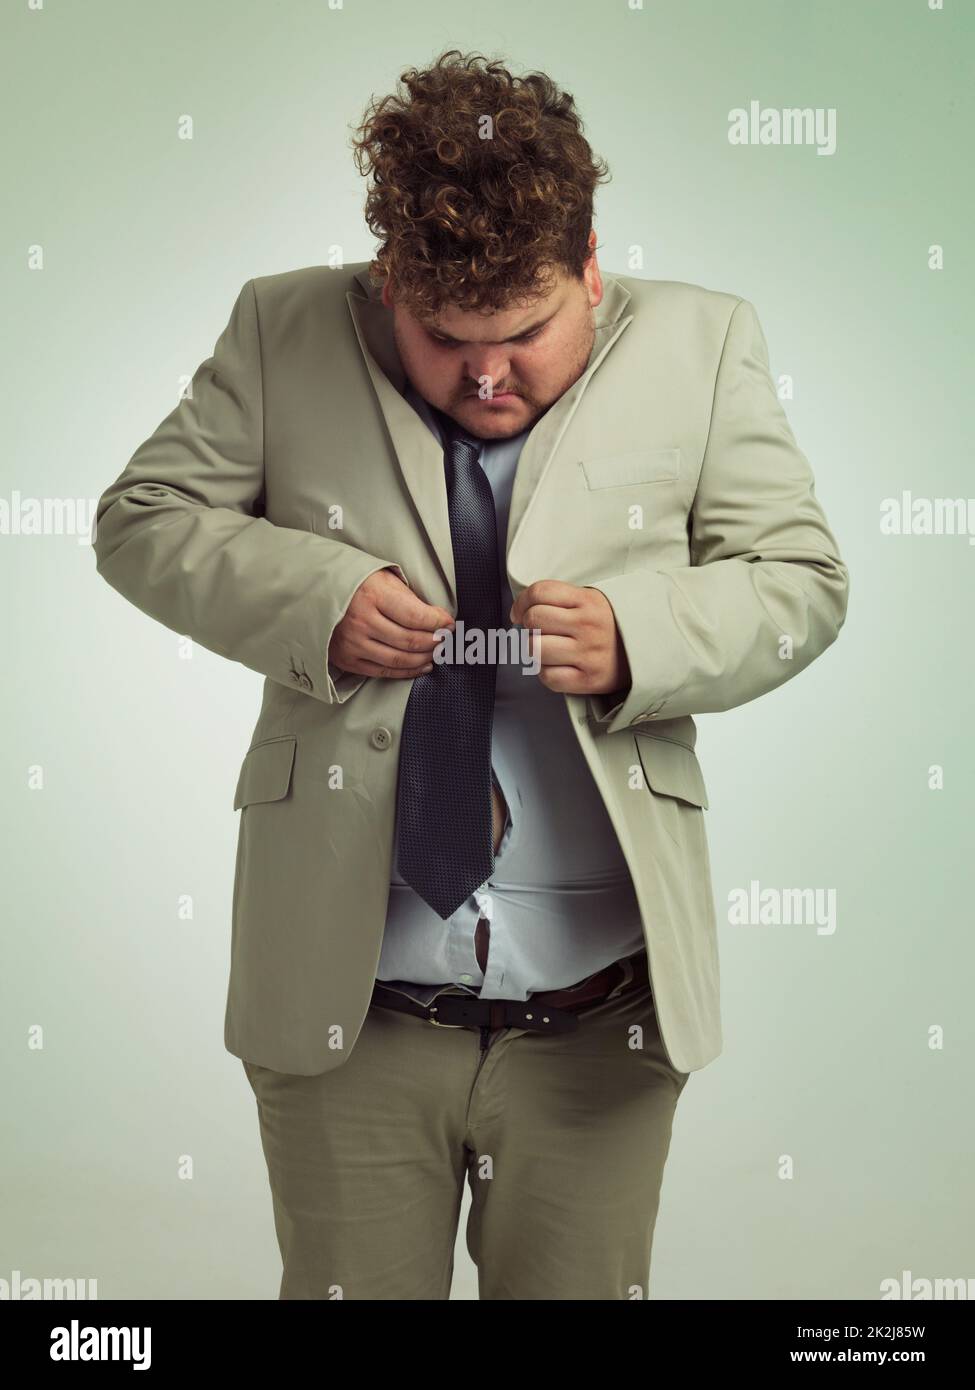 Wie wird das gemacht? Aufnahme eines übergewichtigen Mannes in einem Anzug, der versucht, seine Jacke zu drücken. Stockfoto